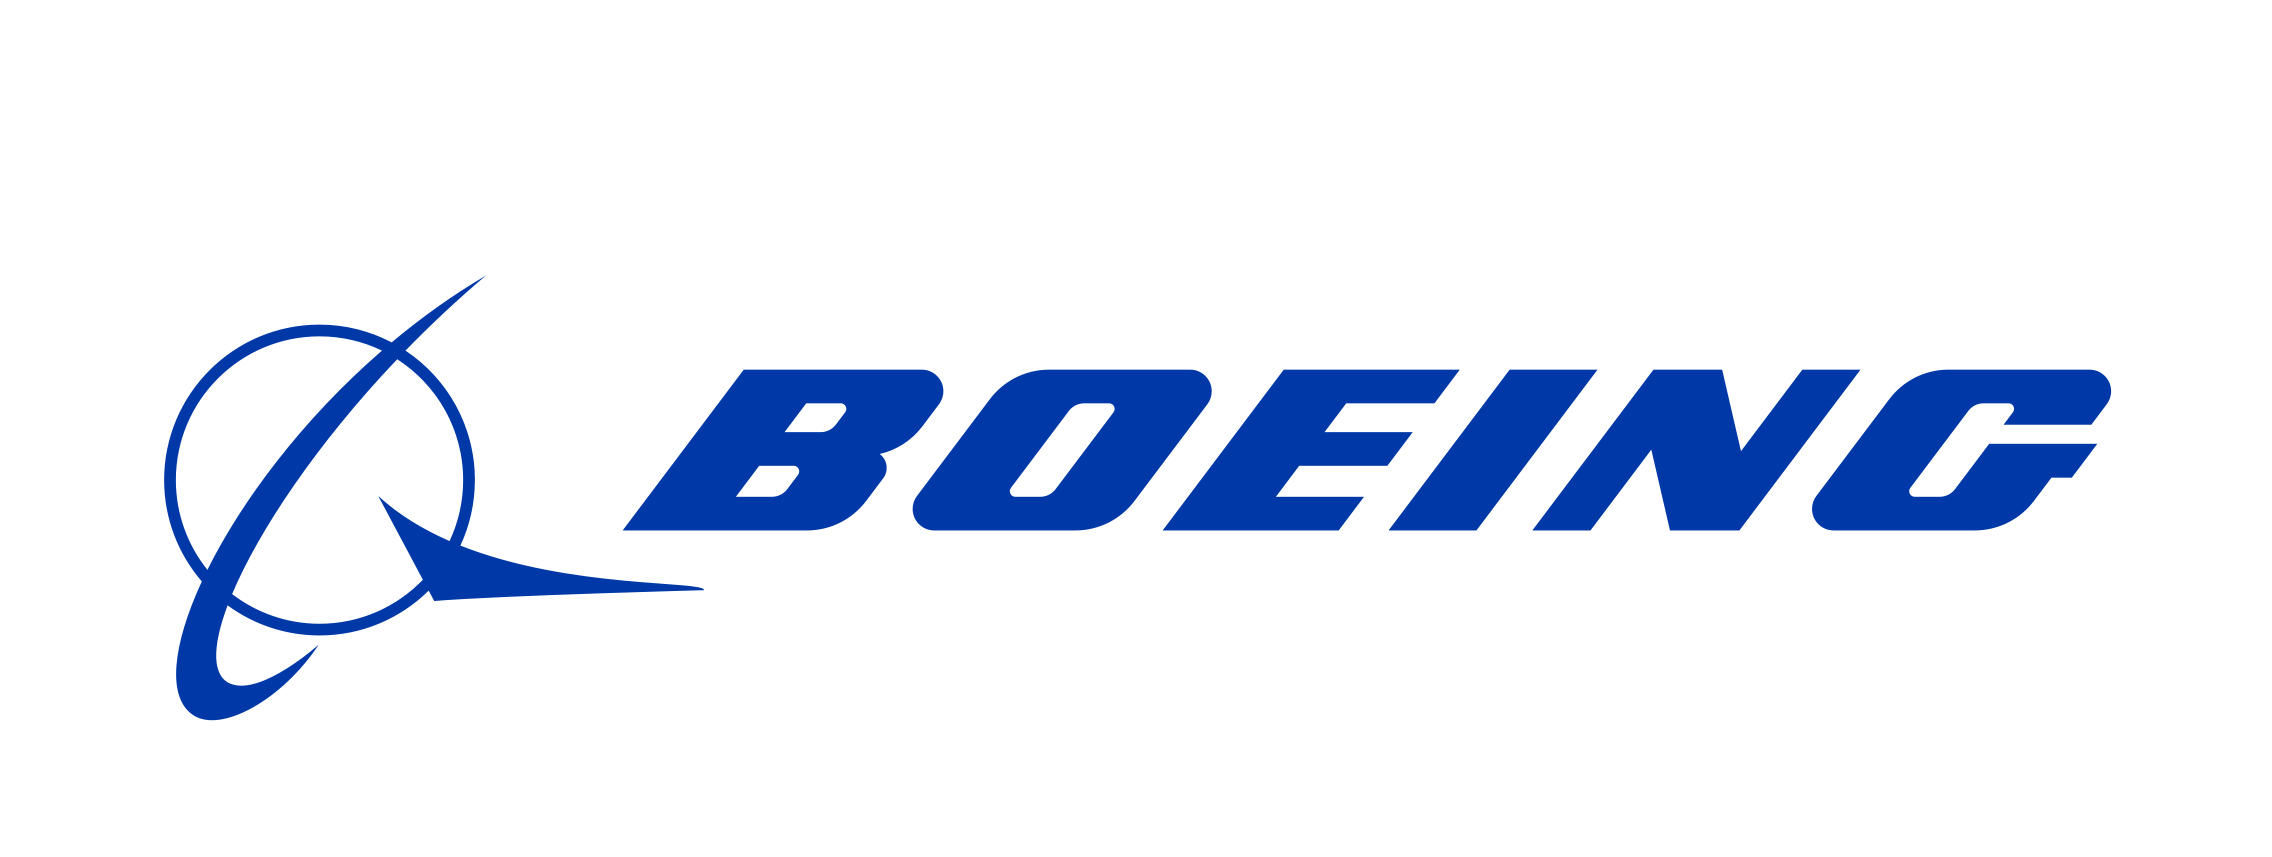 Boeing Wave Analysis 30 September, 2020